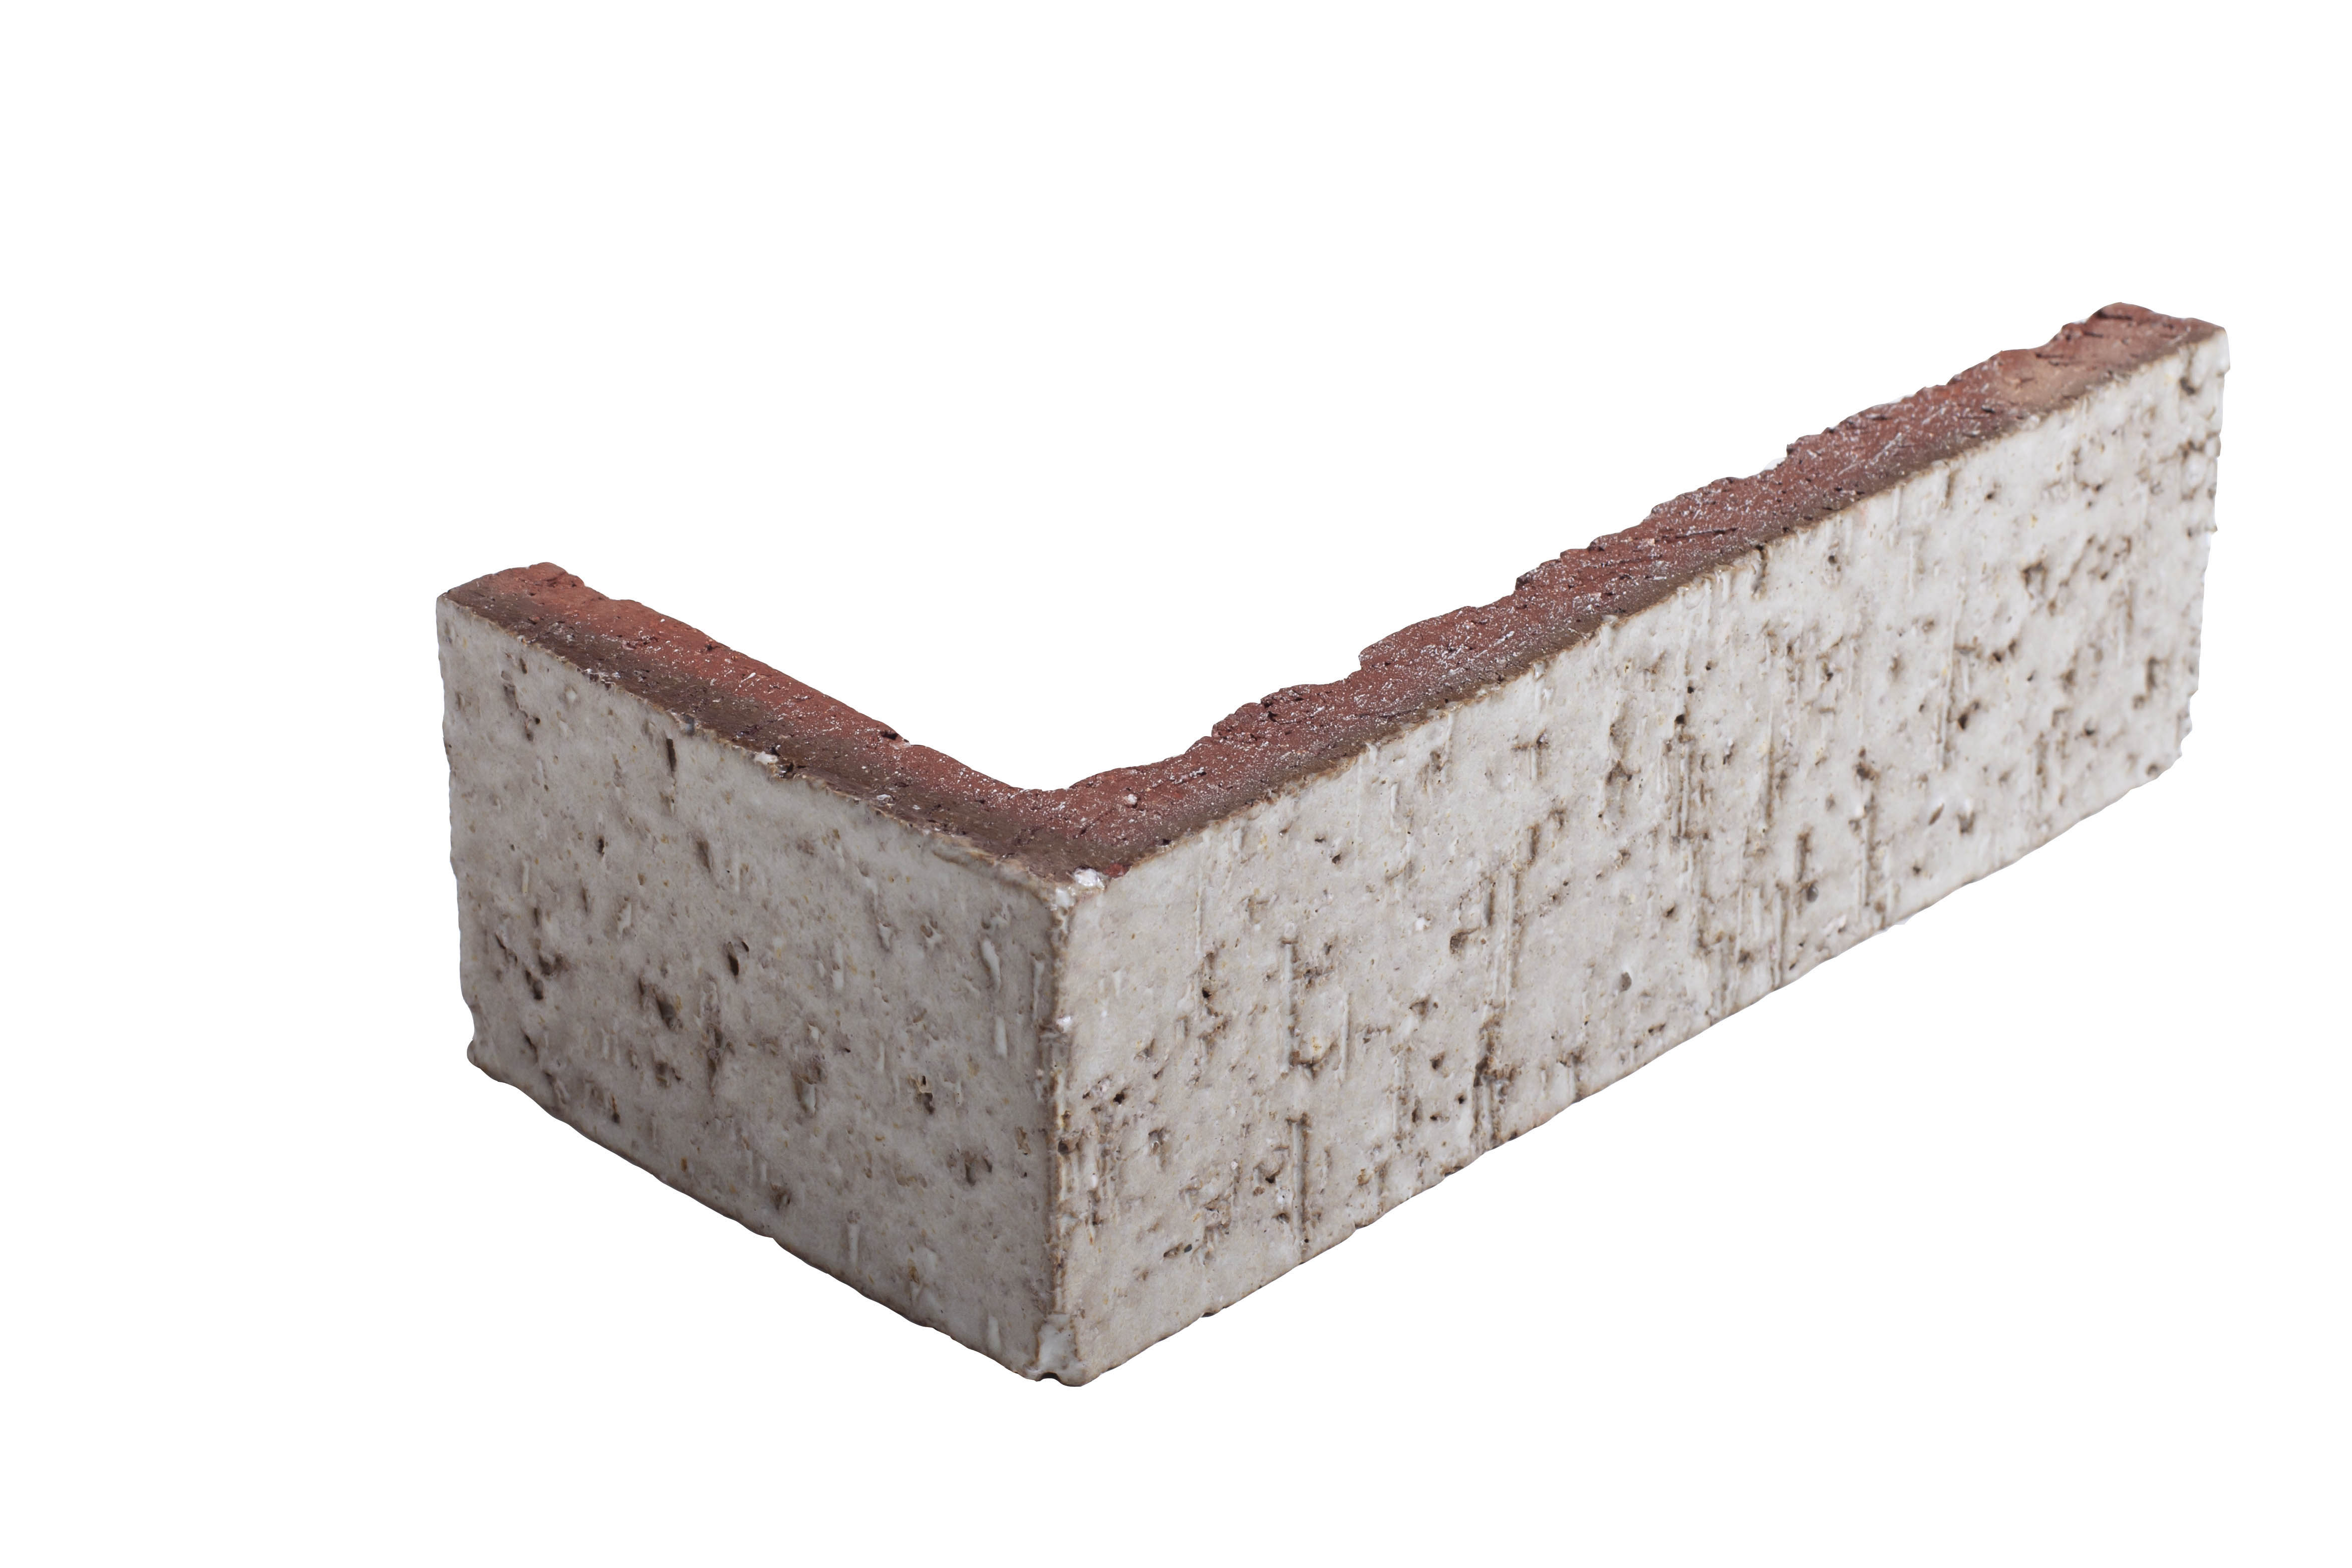 Arto Glazed Brick: Walnut Spice  (Corner 2¼"x7⅝"x⅝")